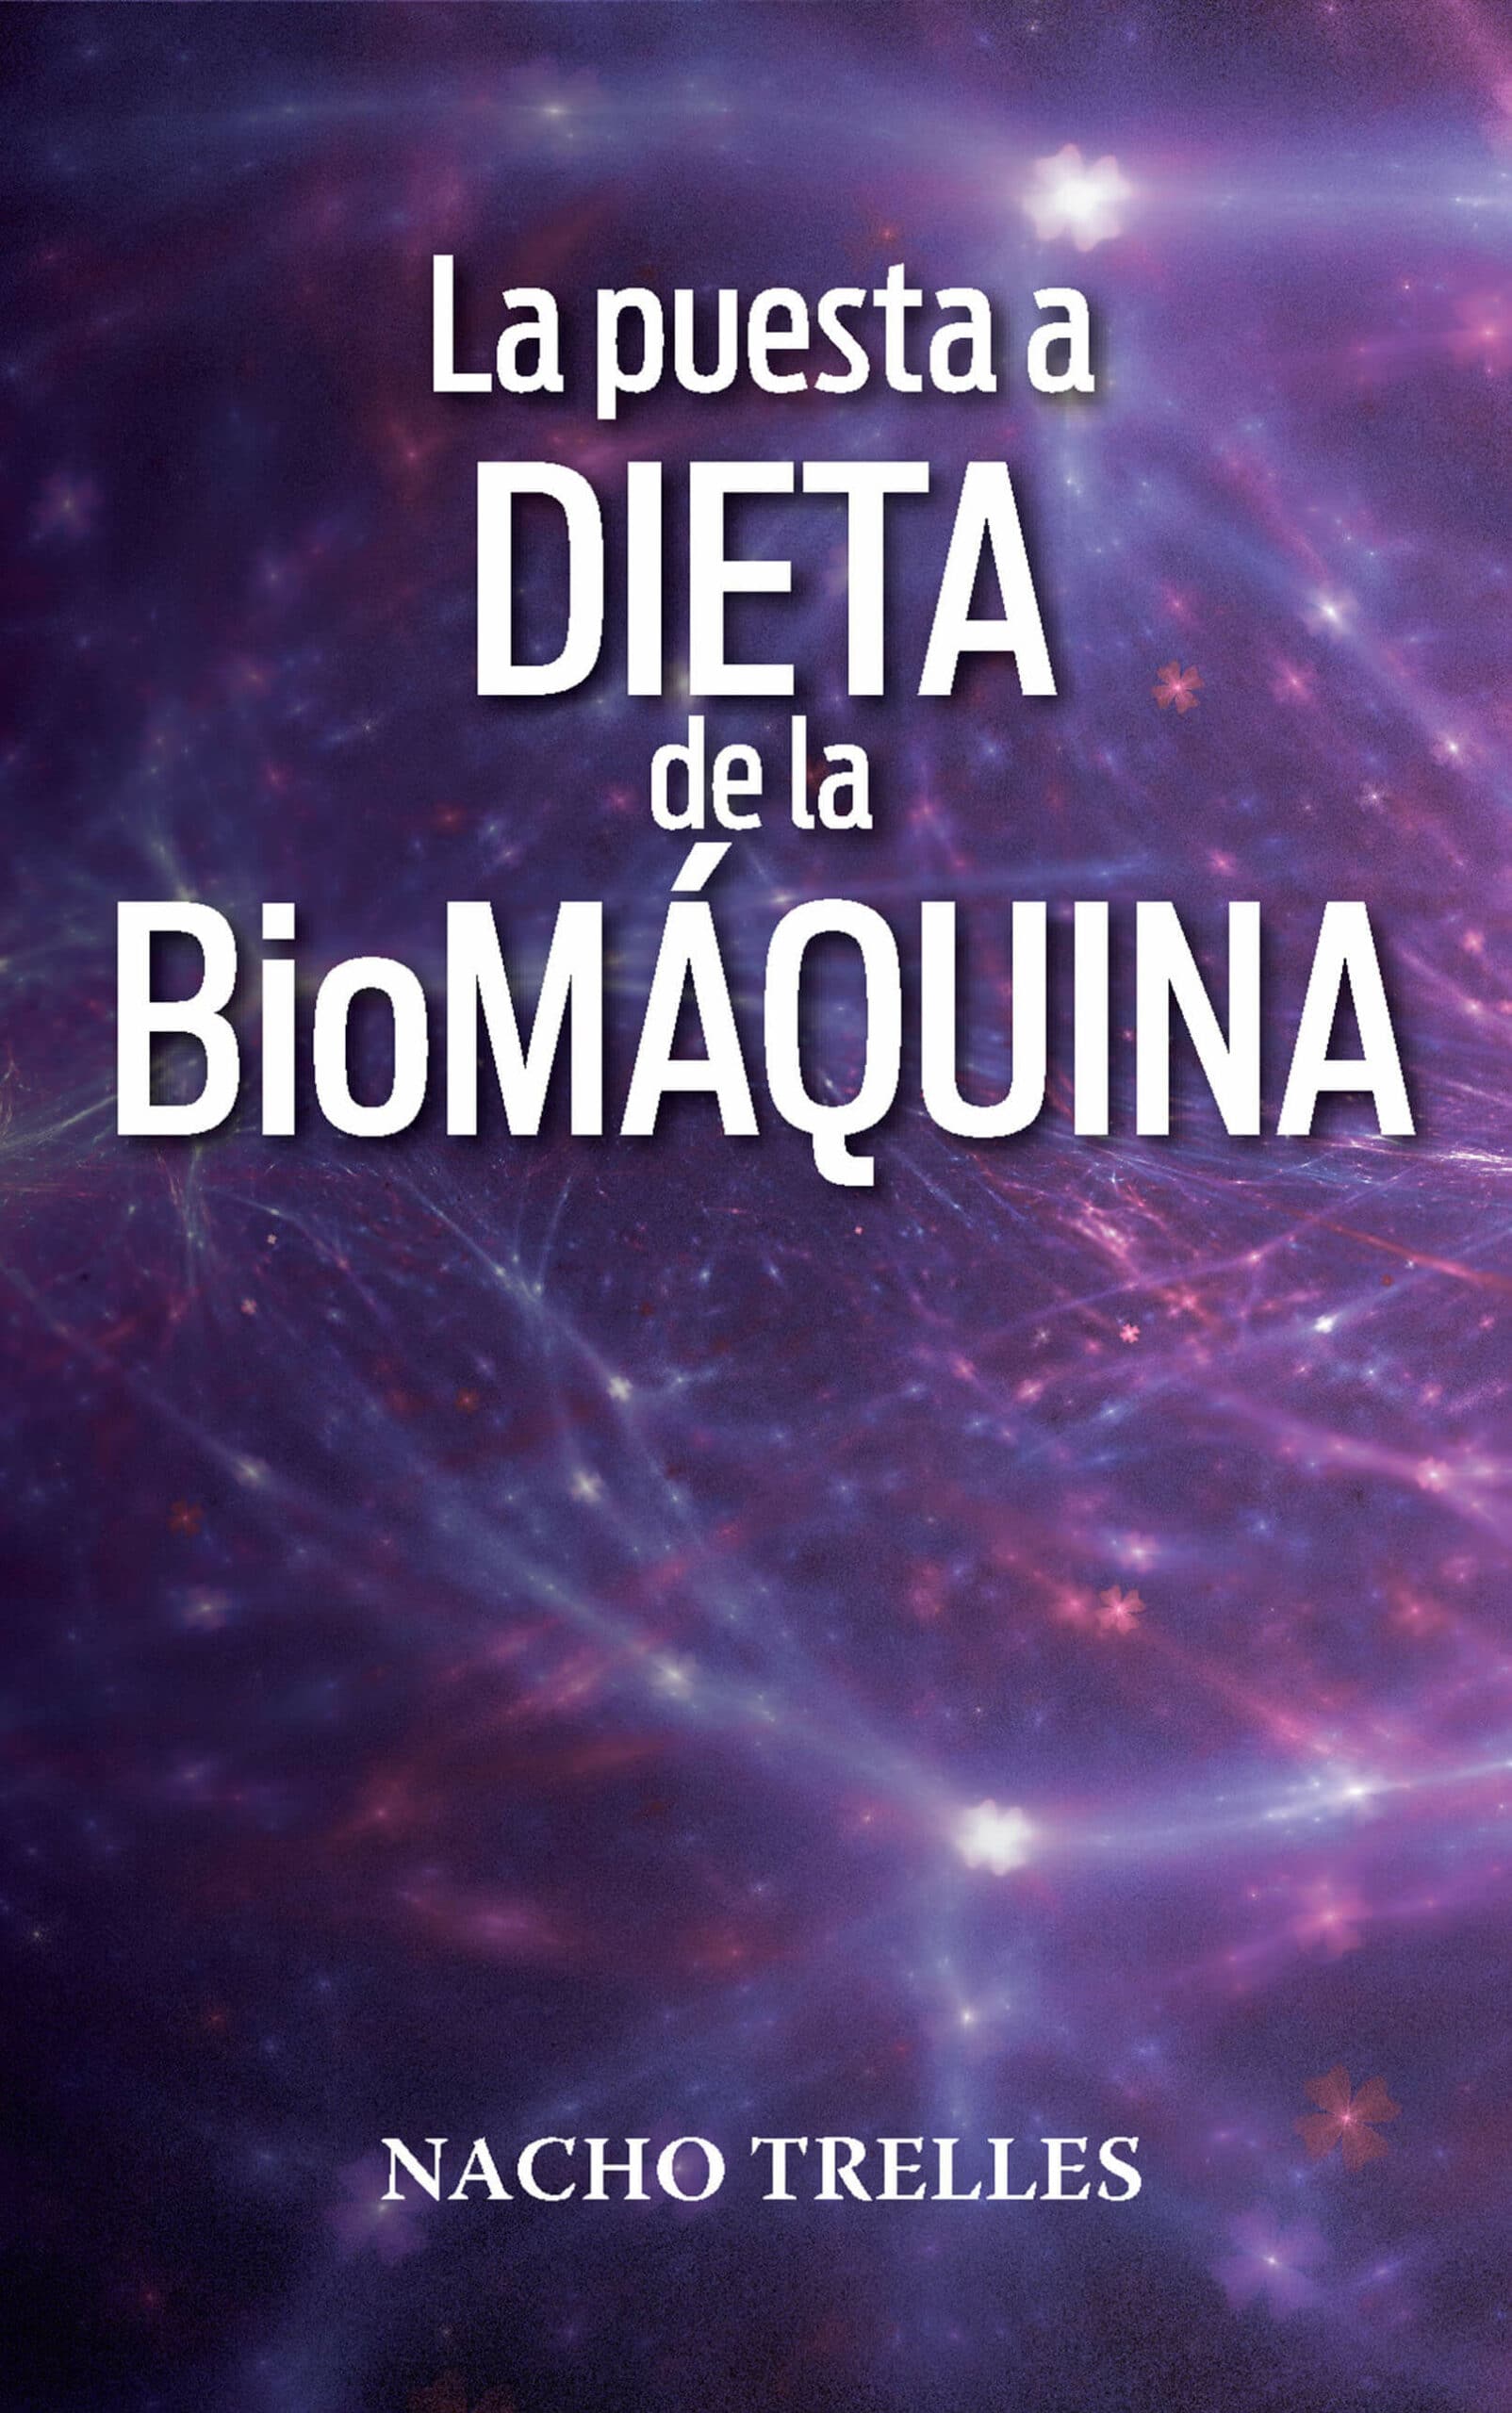 La dieta de la biomáquina, de Nacho Trelles